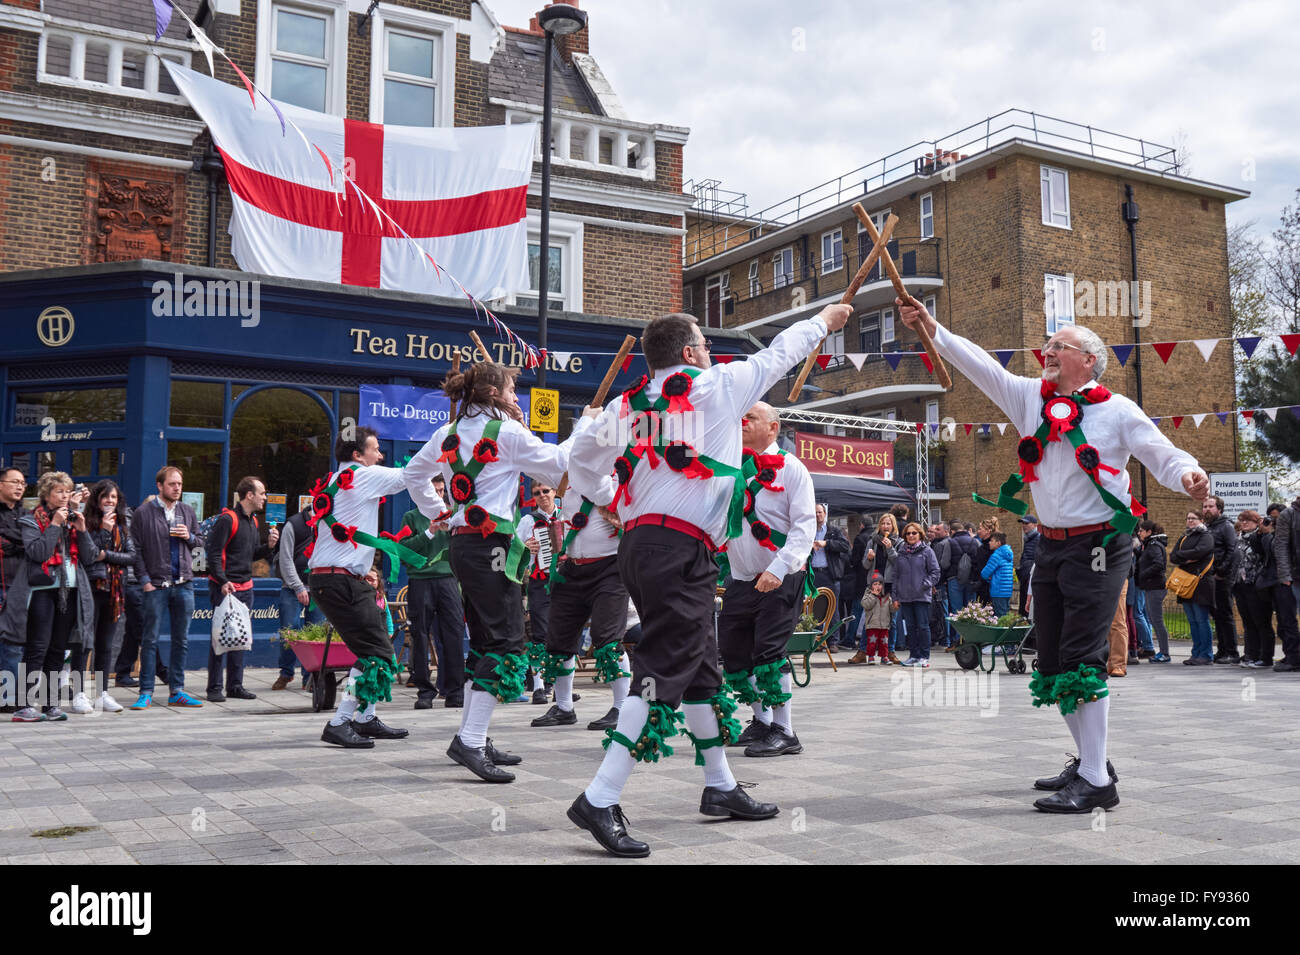 Morris Dancers au St George's Festival à Londres Angleterre Royaume-Uni Banque D'Images